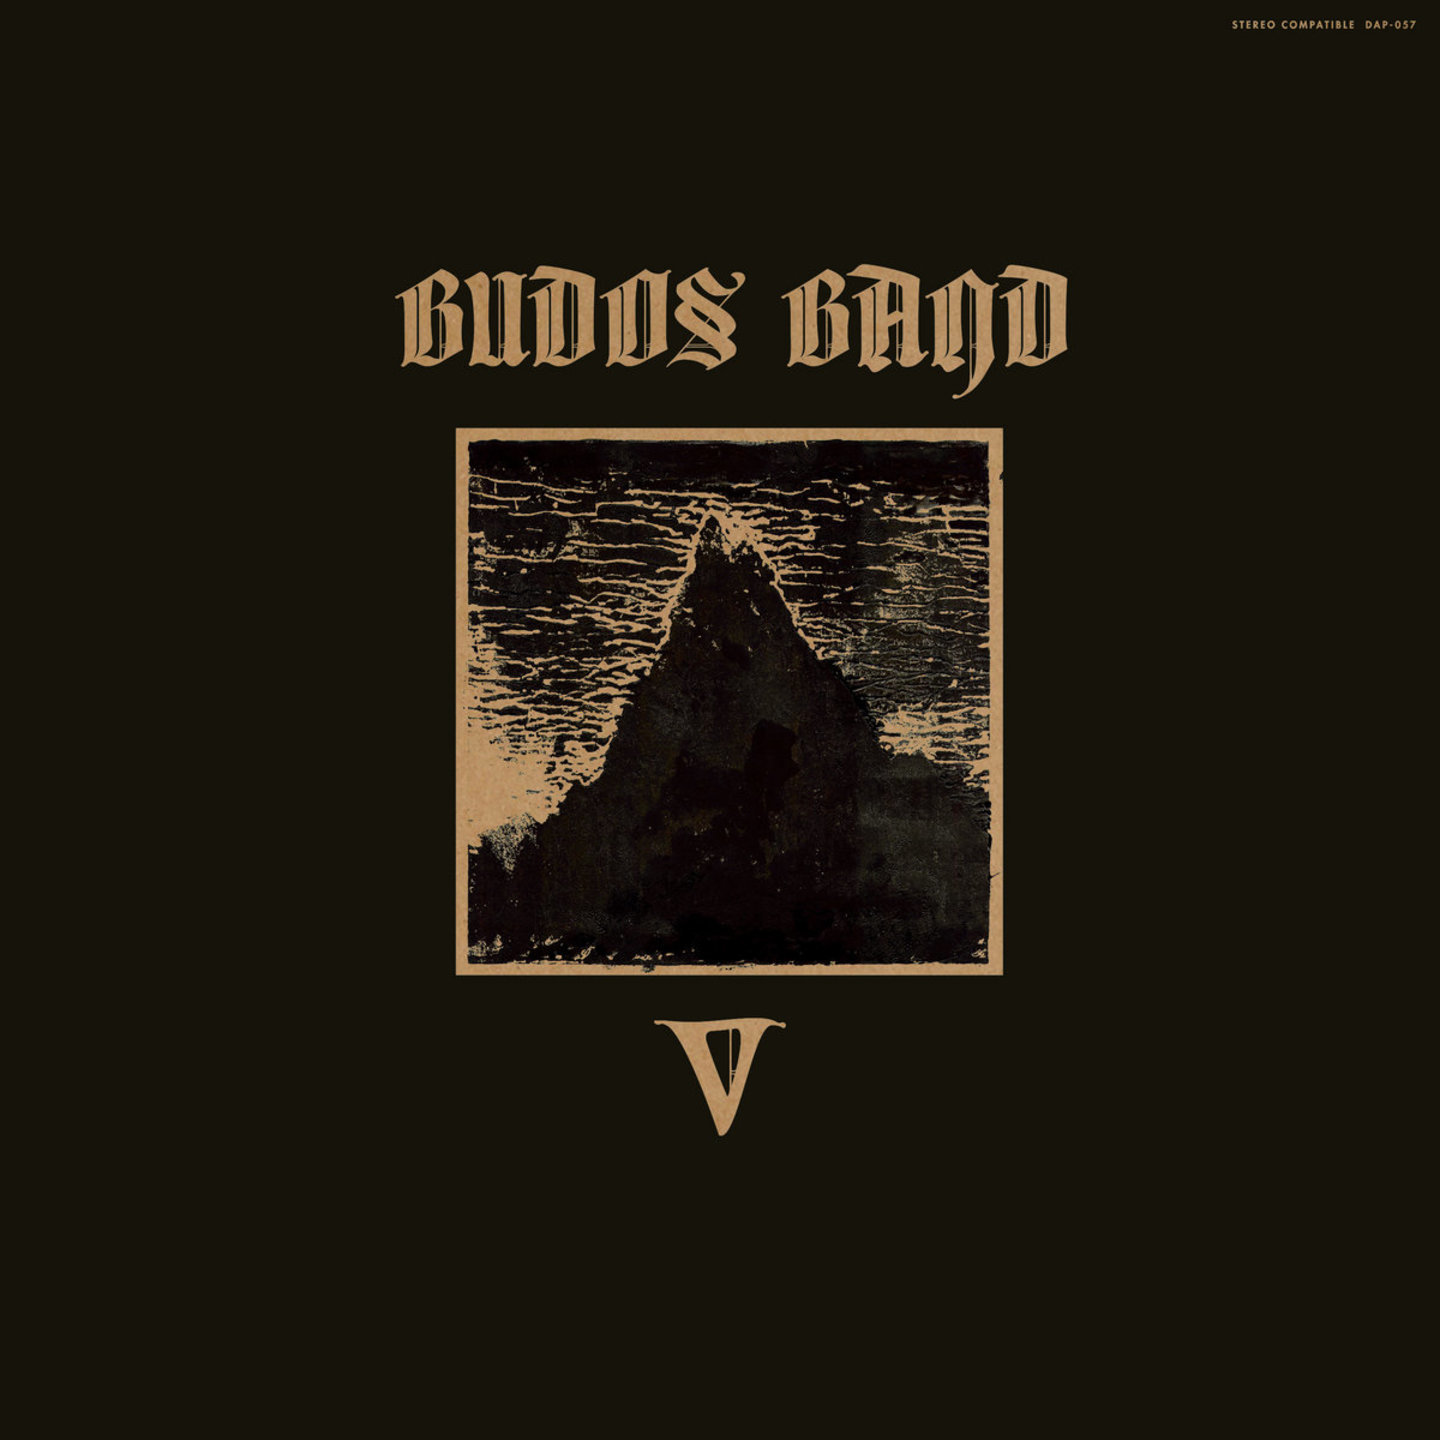 BUDOS BAND, THE - V LP